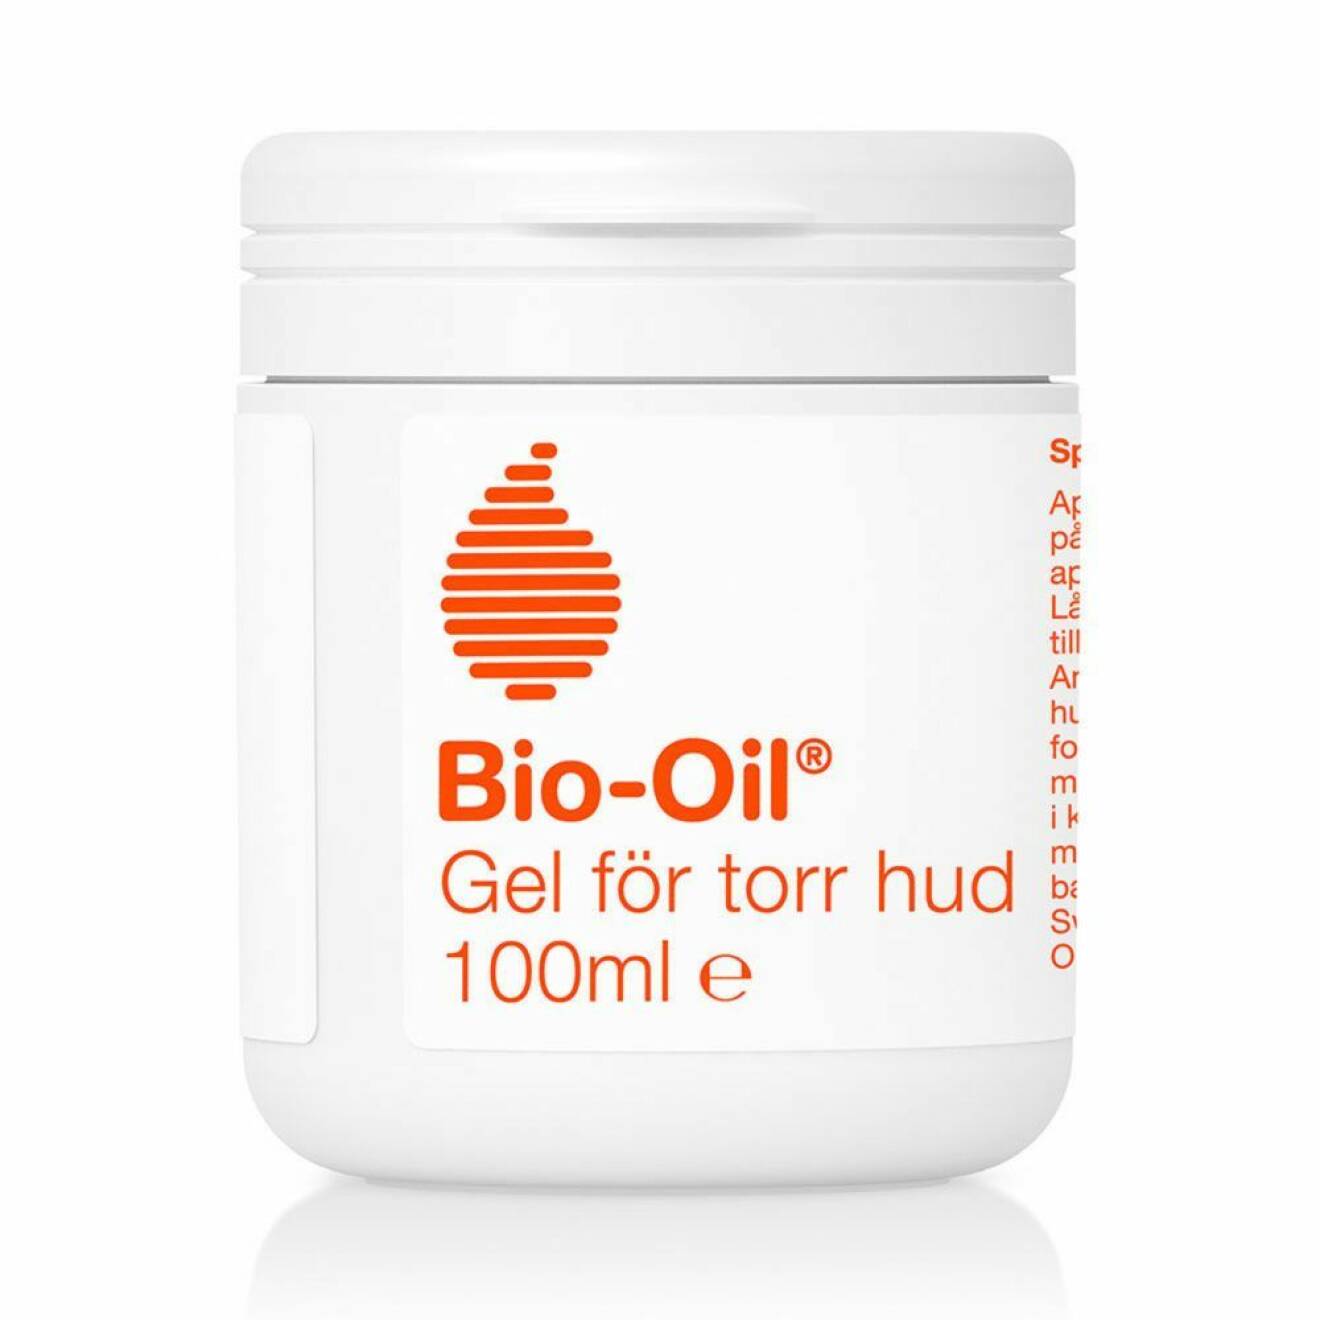 En uppdaterad version av den klassiska oljan Bio-oil är denna med gel formula